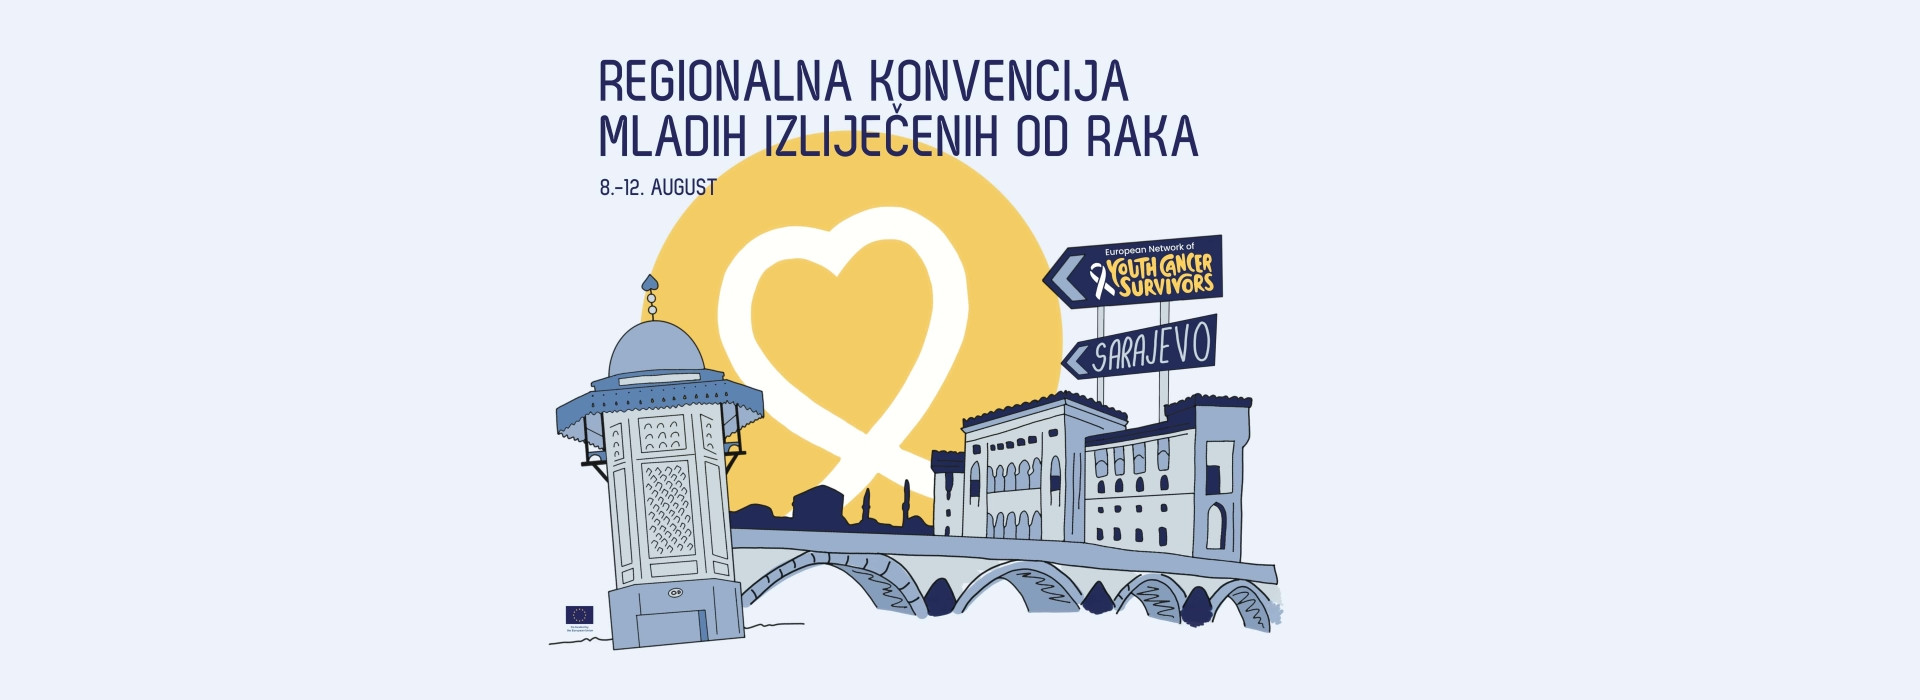 Regionalna konvencija mladih izliječenih od raka u Sarajevu